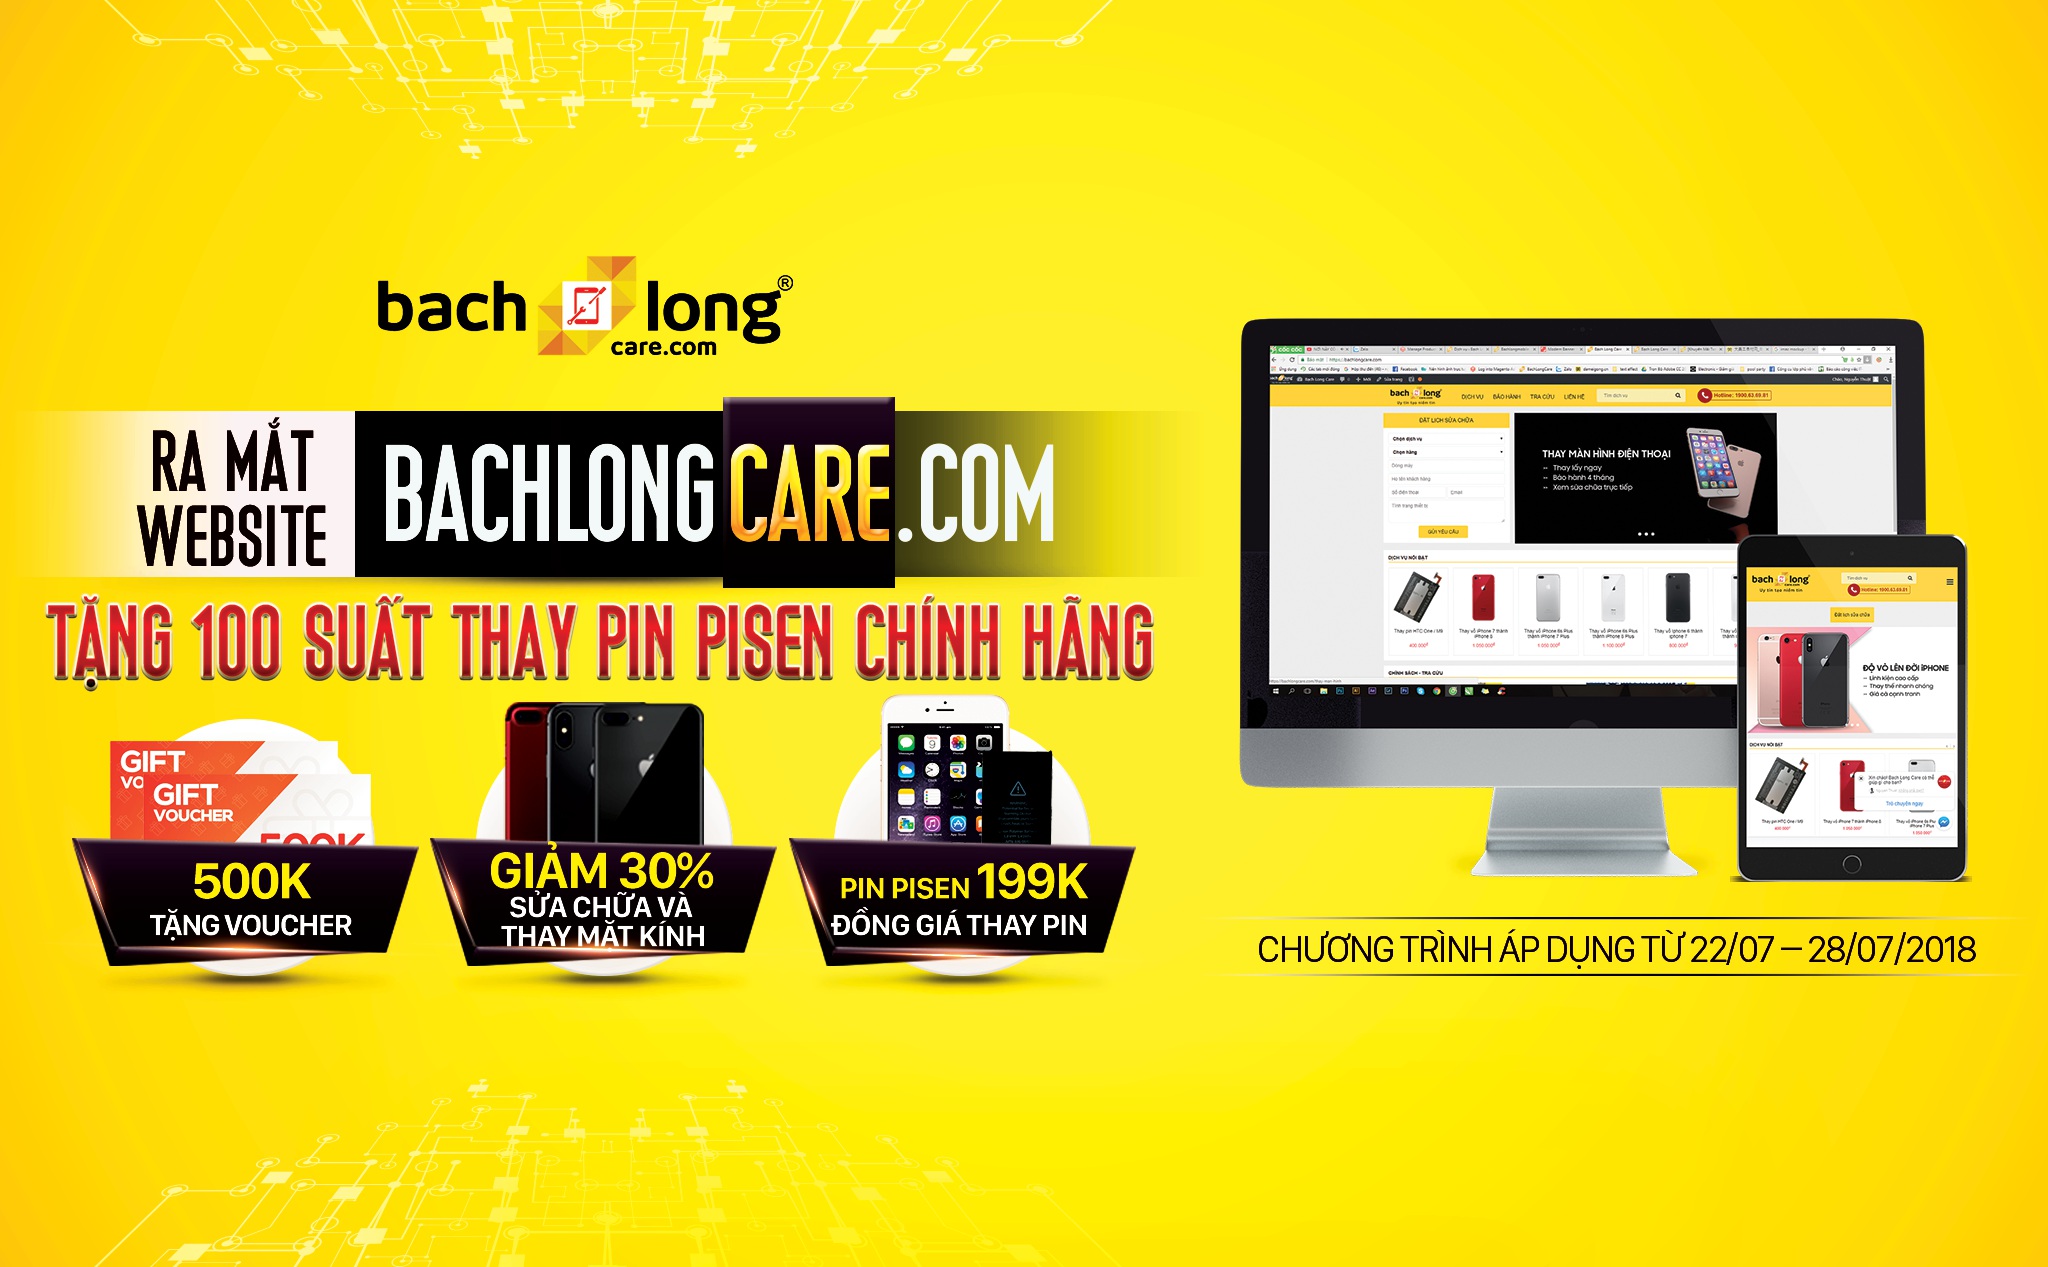 [QC] Tặng 100 suất thay pin iPhone (Pisen chính hãng) – Mừng ra mắt website bachlongcare.com